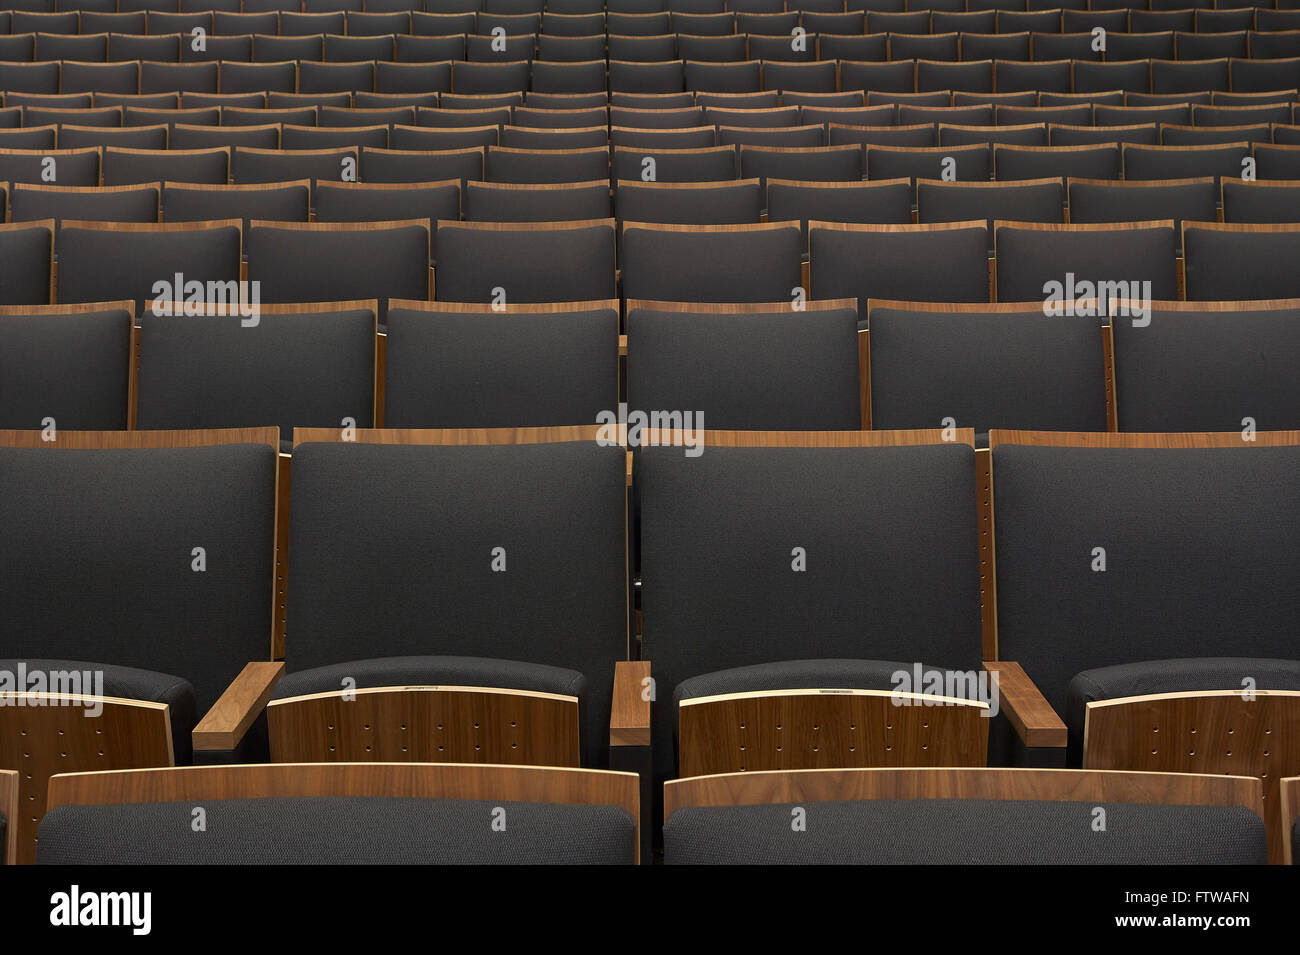 Salle de conférence sièges. Ivey Business School, à London, au Canada. Architecte : Hariri Pontarini Architects, 2013. Banque D'Images